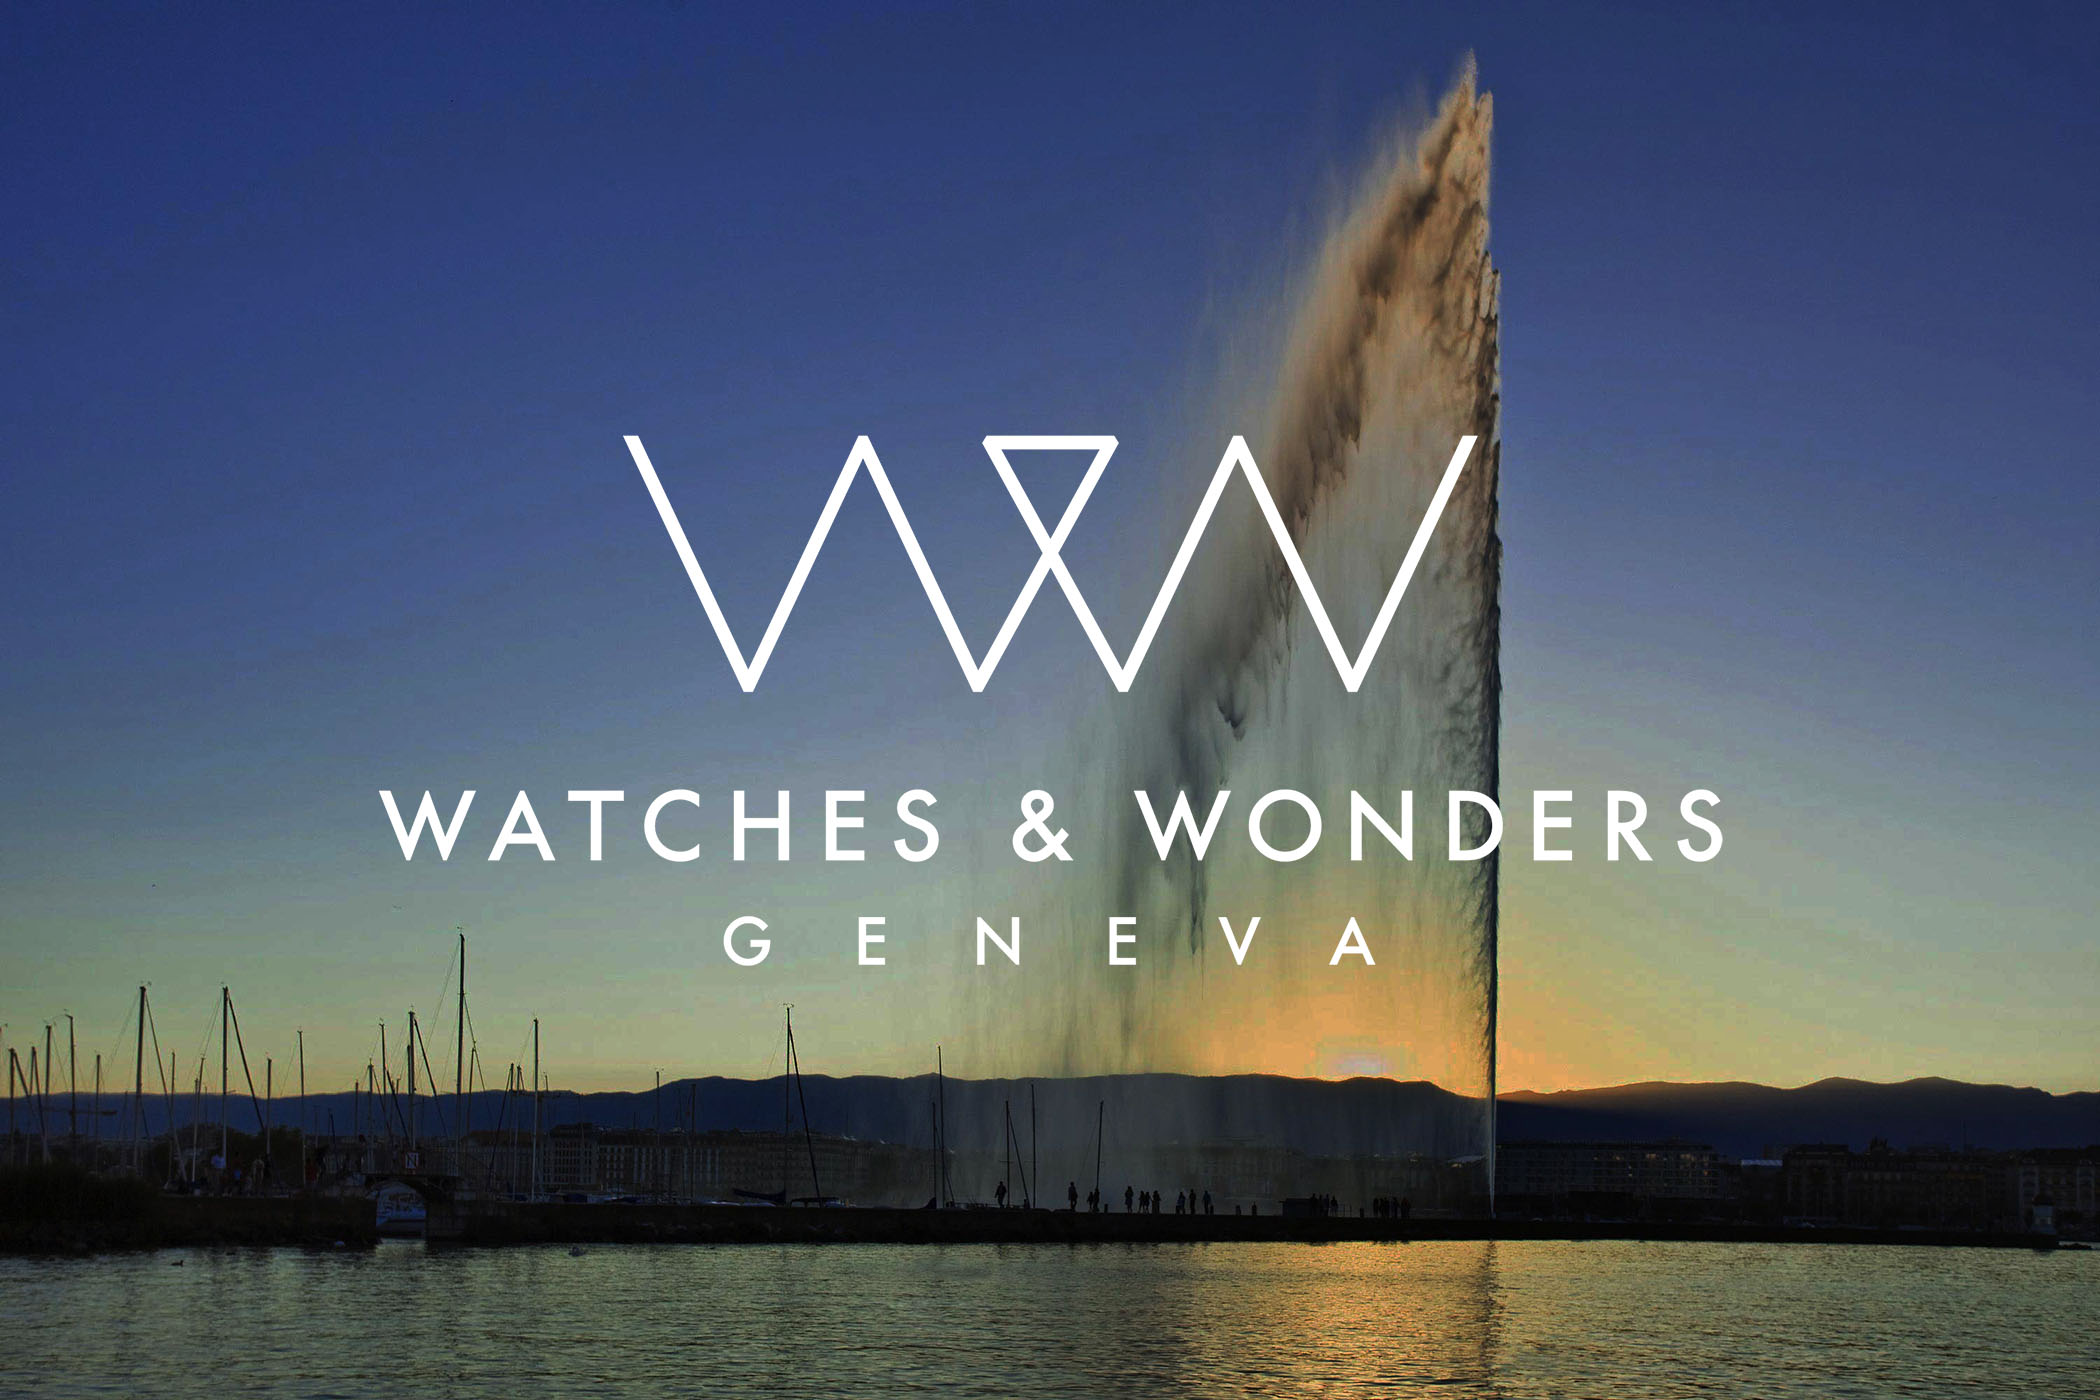 معرض Watches & wonders 2021 رقمياً مرة جديدة! عالم الساعات و المجوهرات